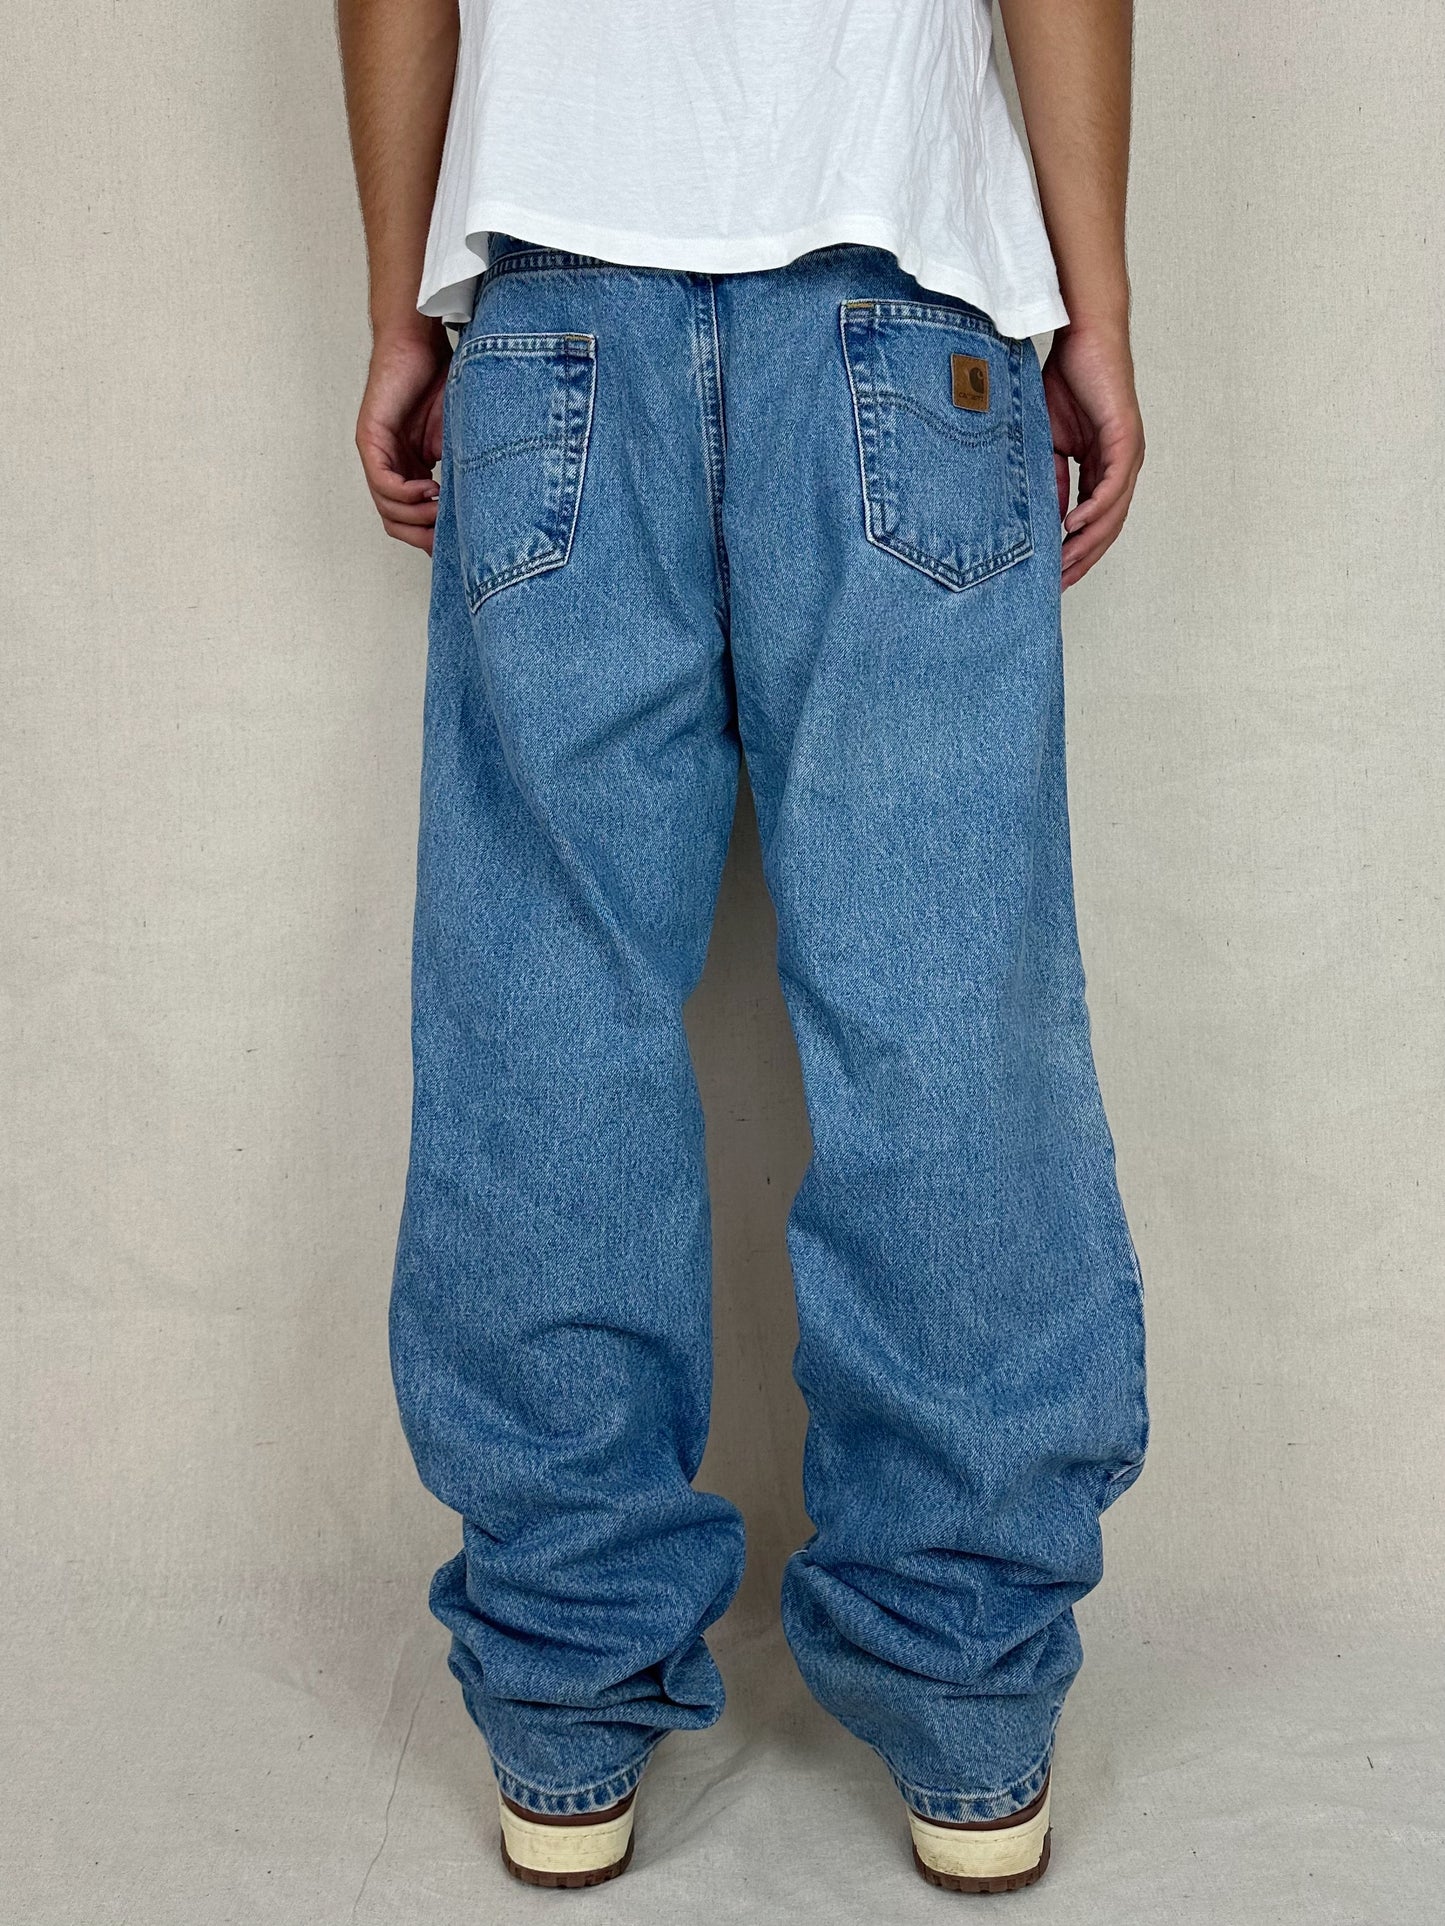 90's Carhartt Heavy Duty Vintage Jeans Size 38x35